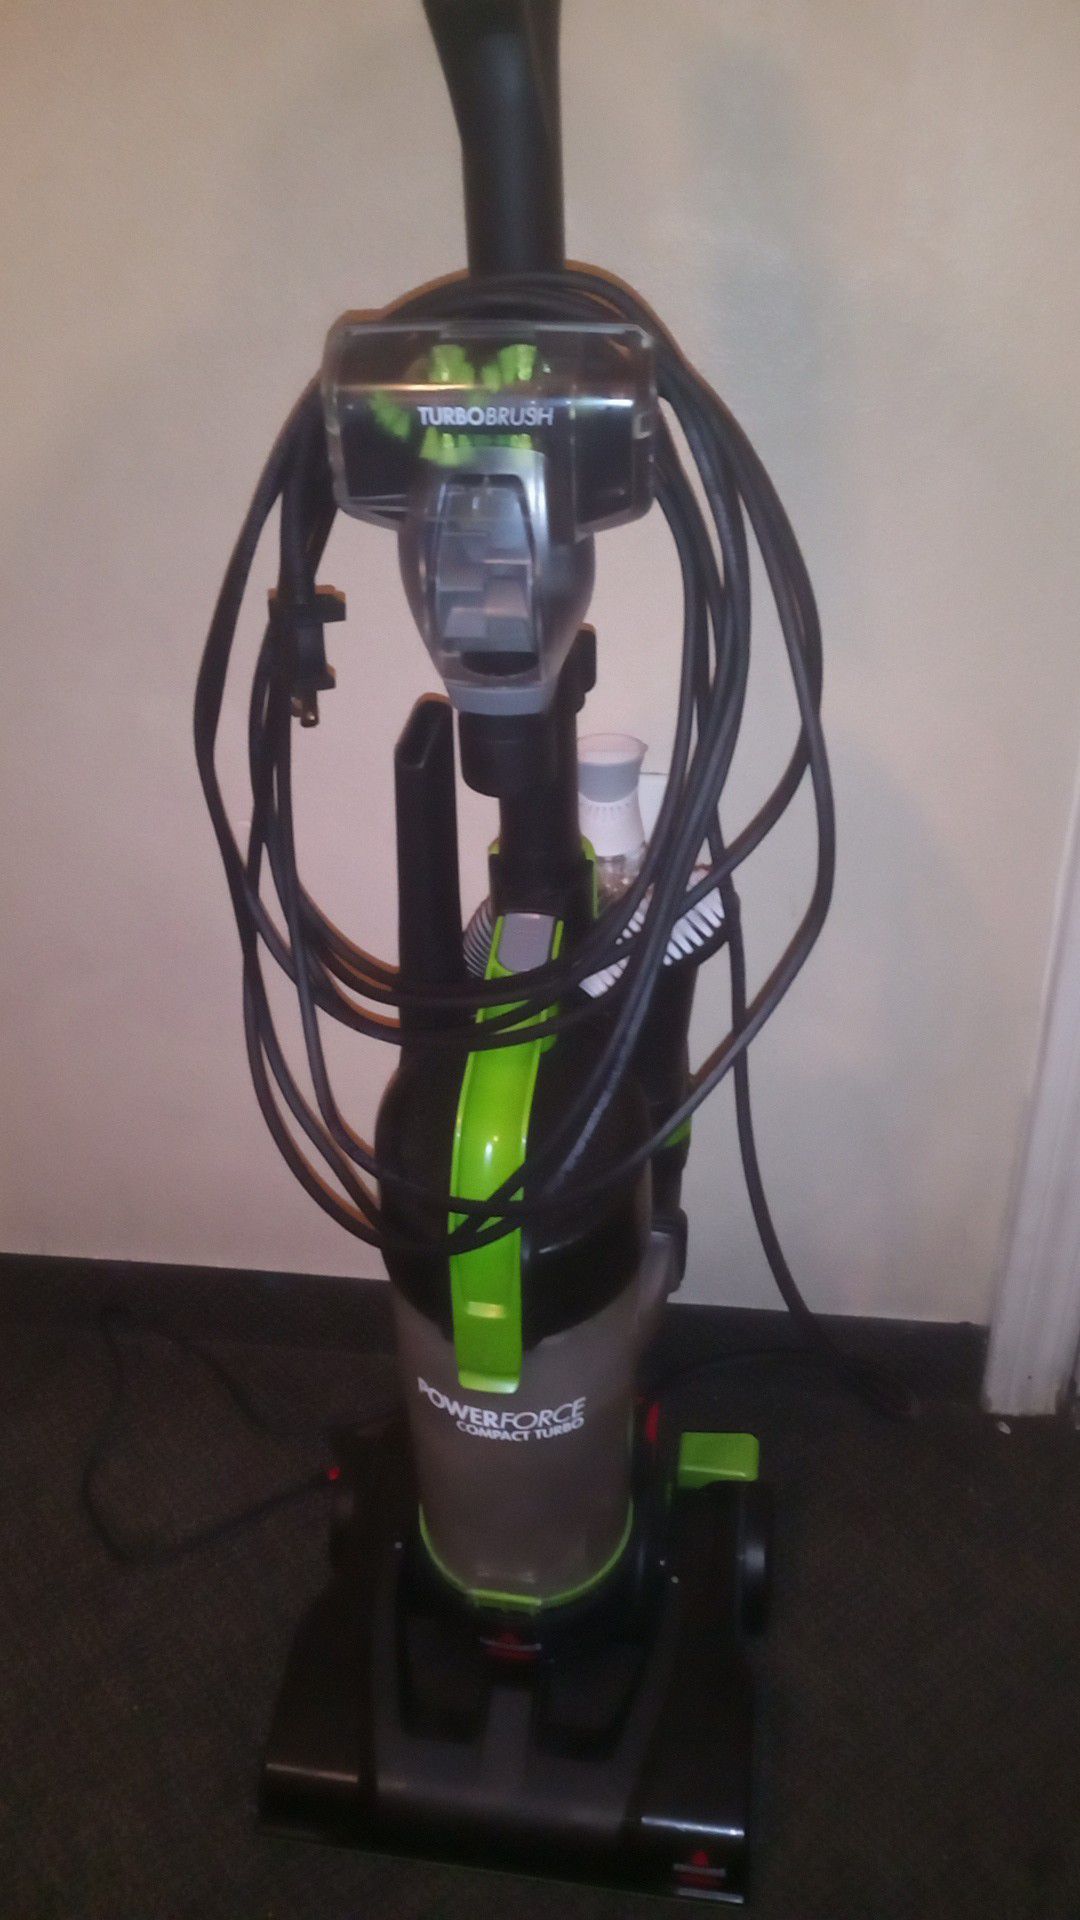 Bissell PowerForce vacuum